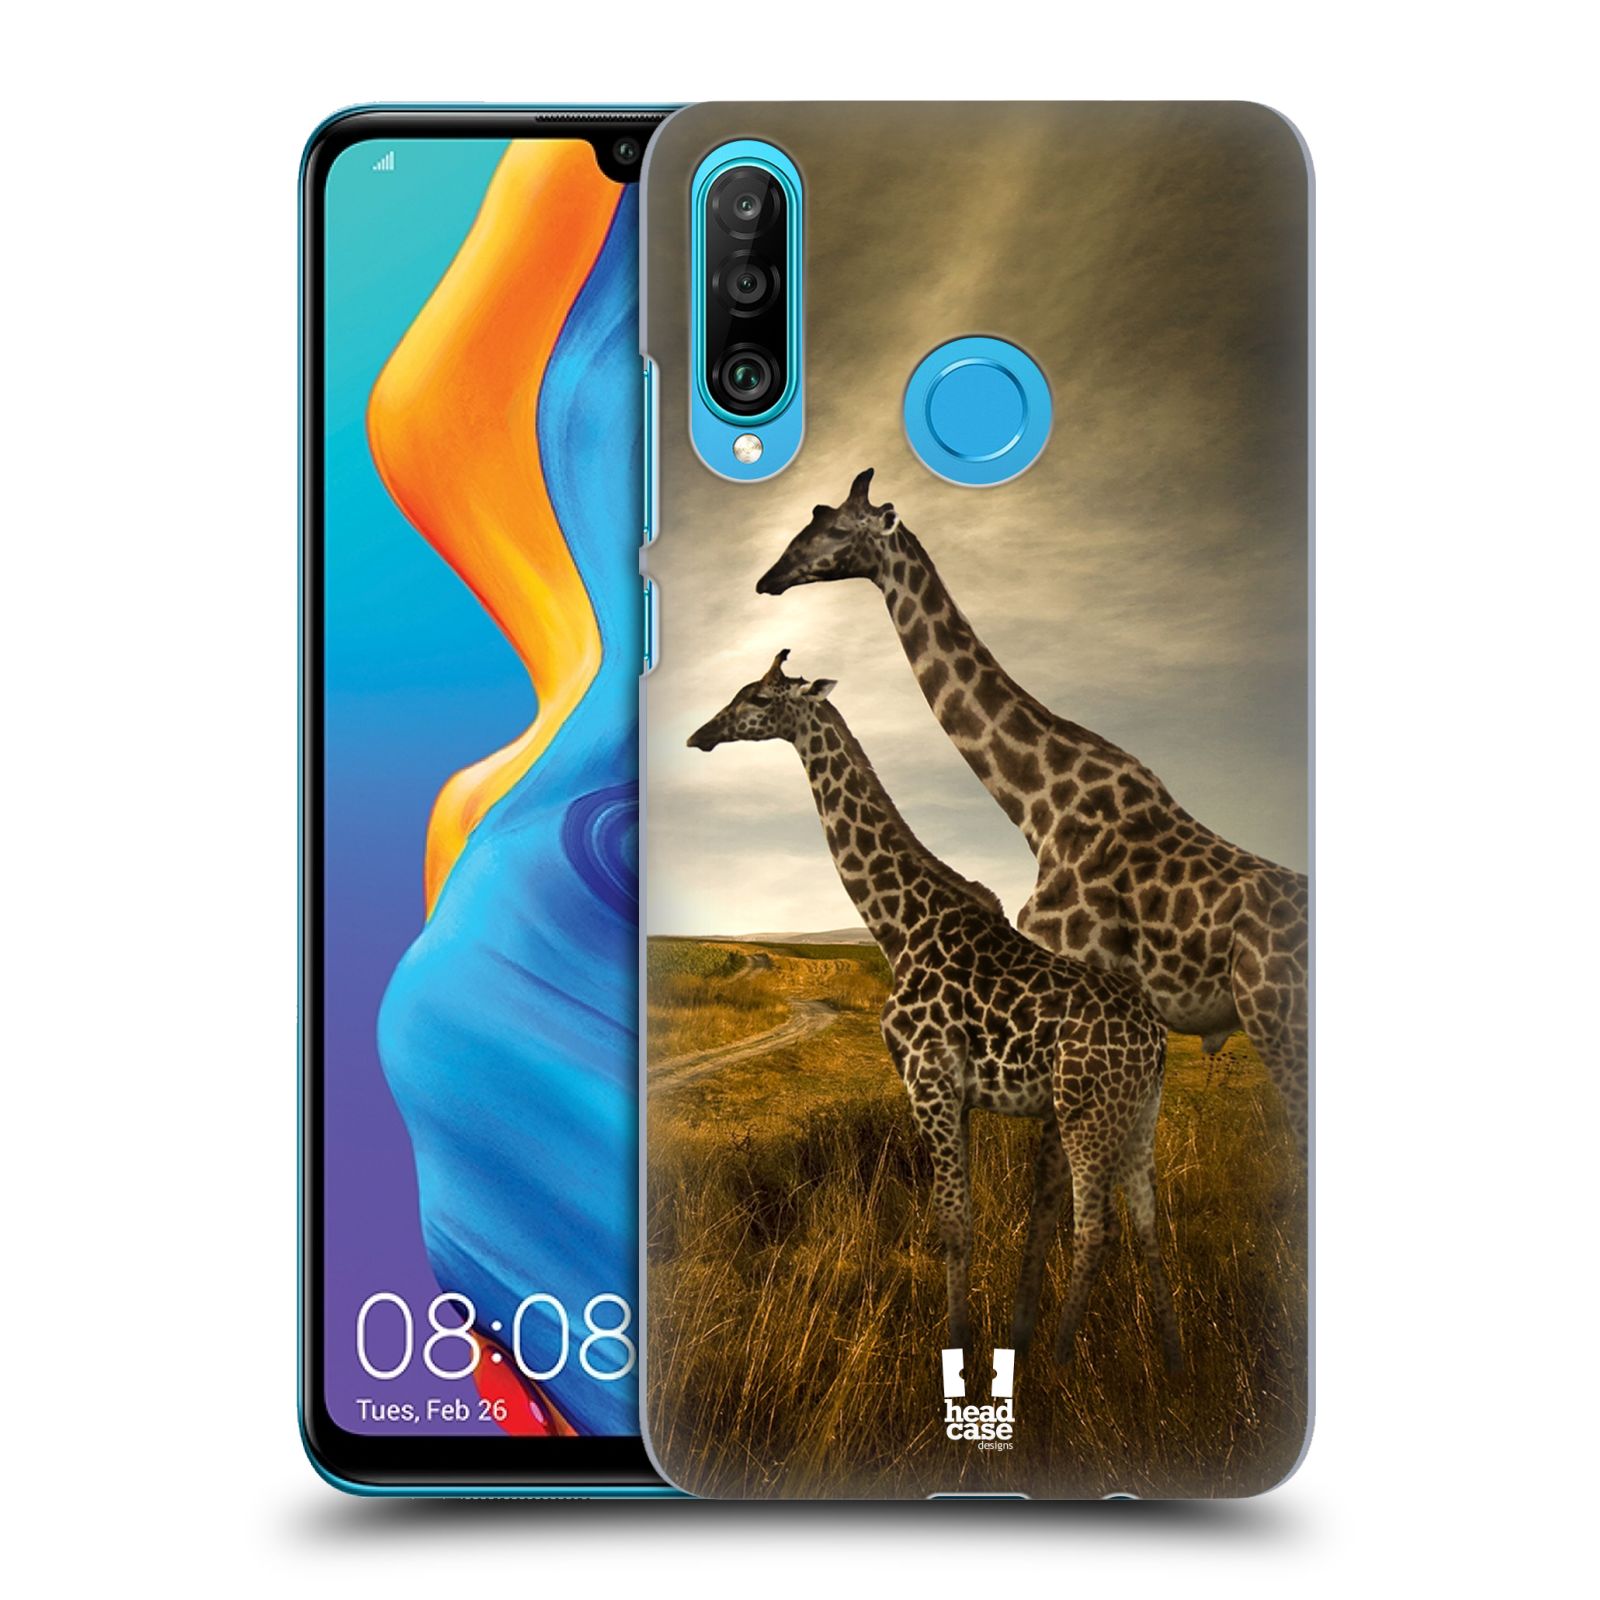 Zadní obal pro mobil Huawei P30 LITE - HEAD CASE - Svět zvířat žirafy